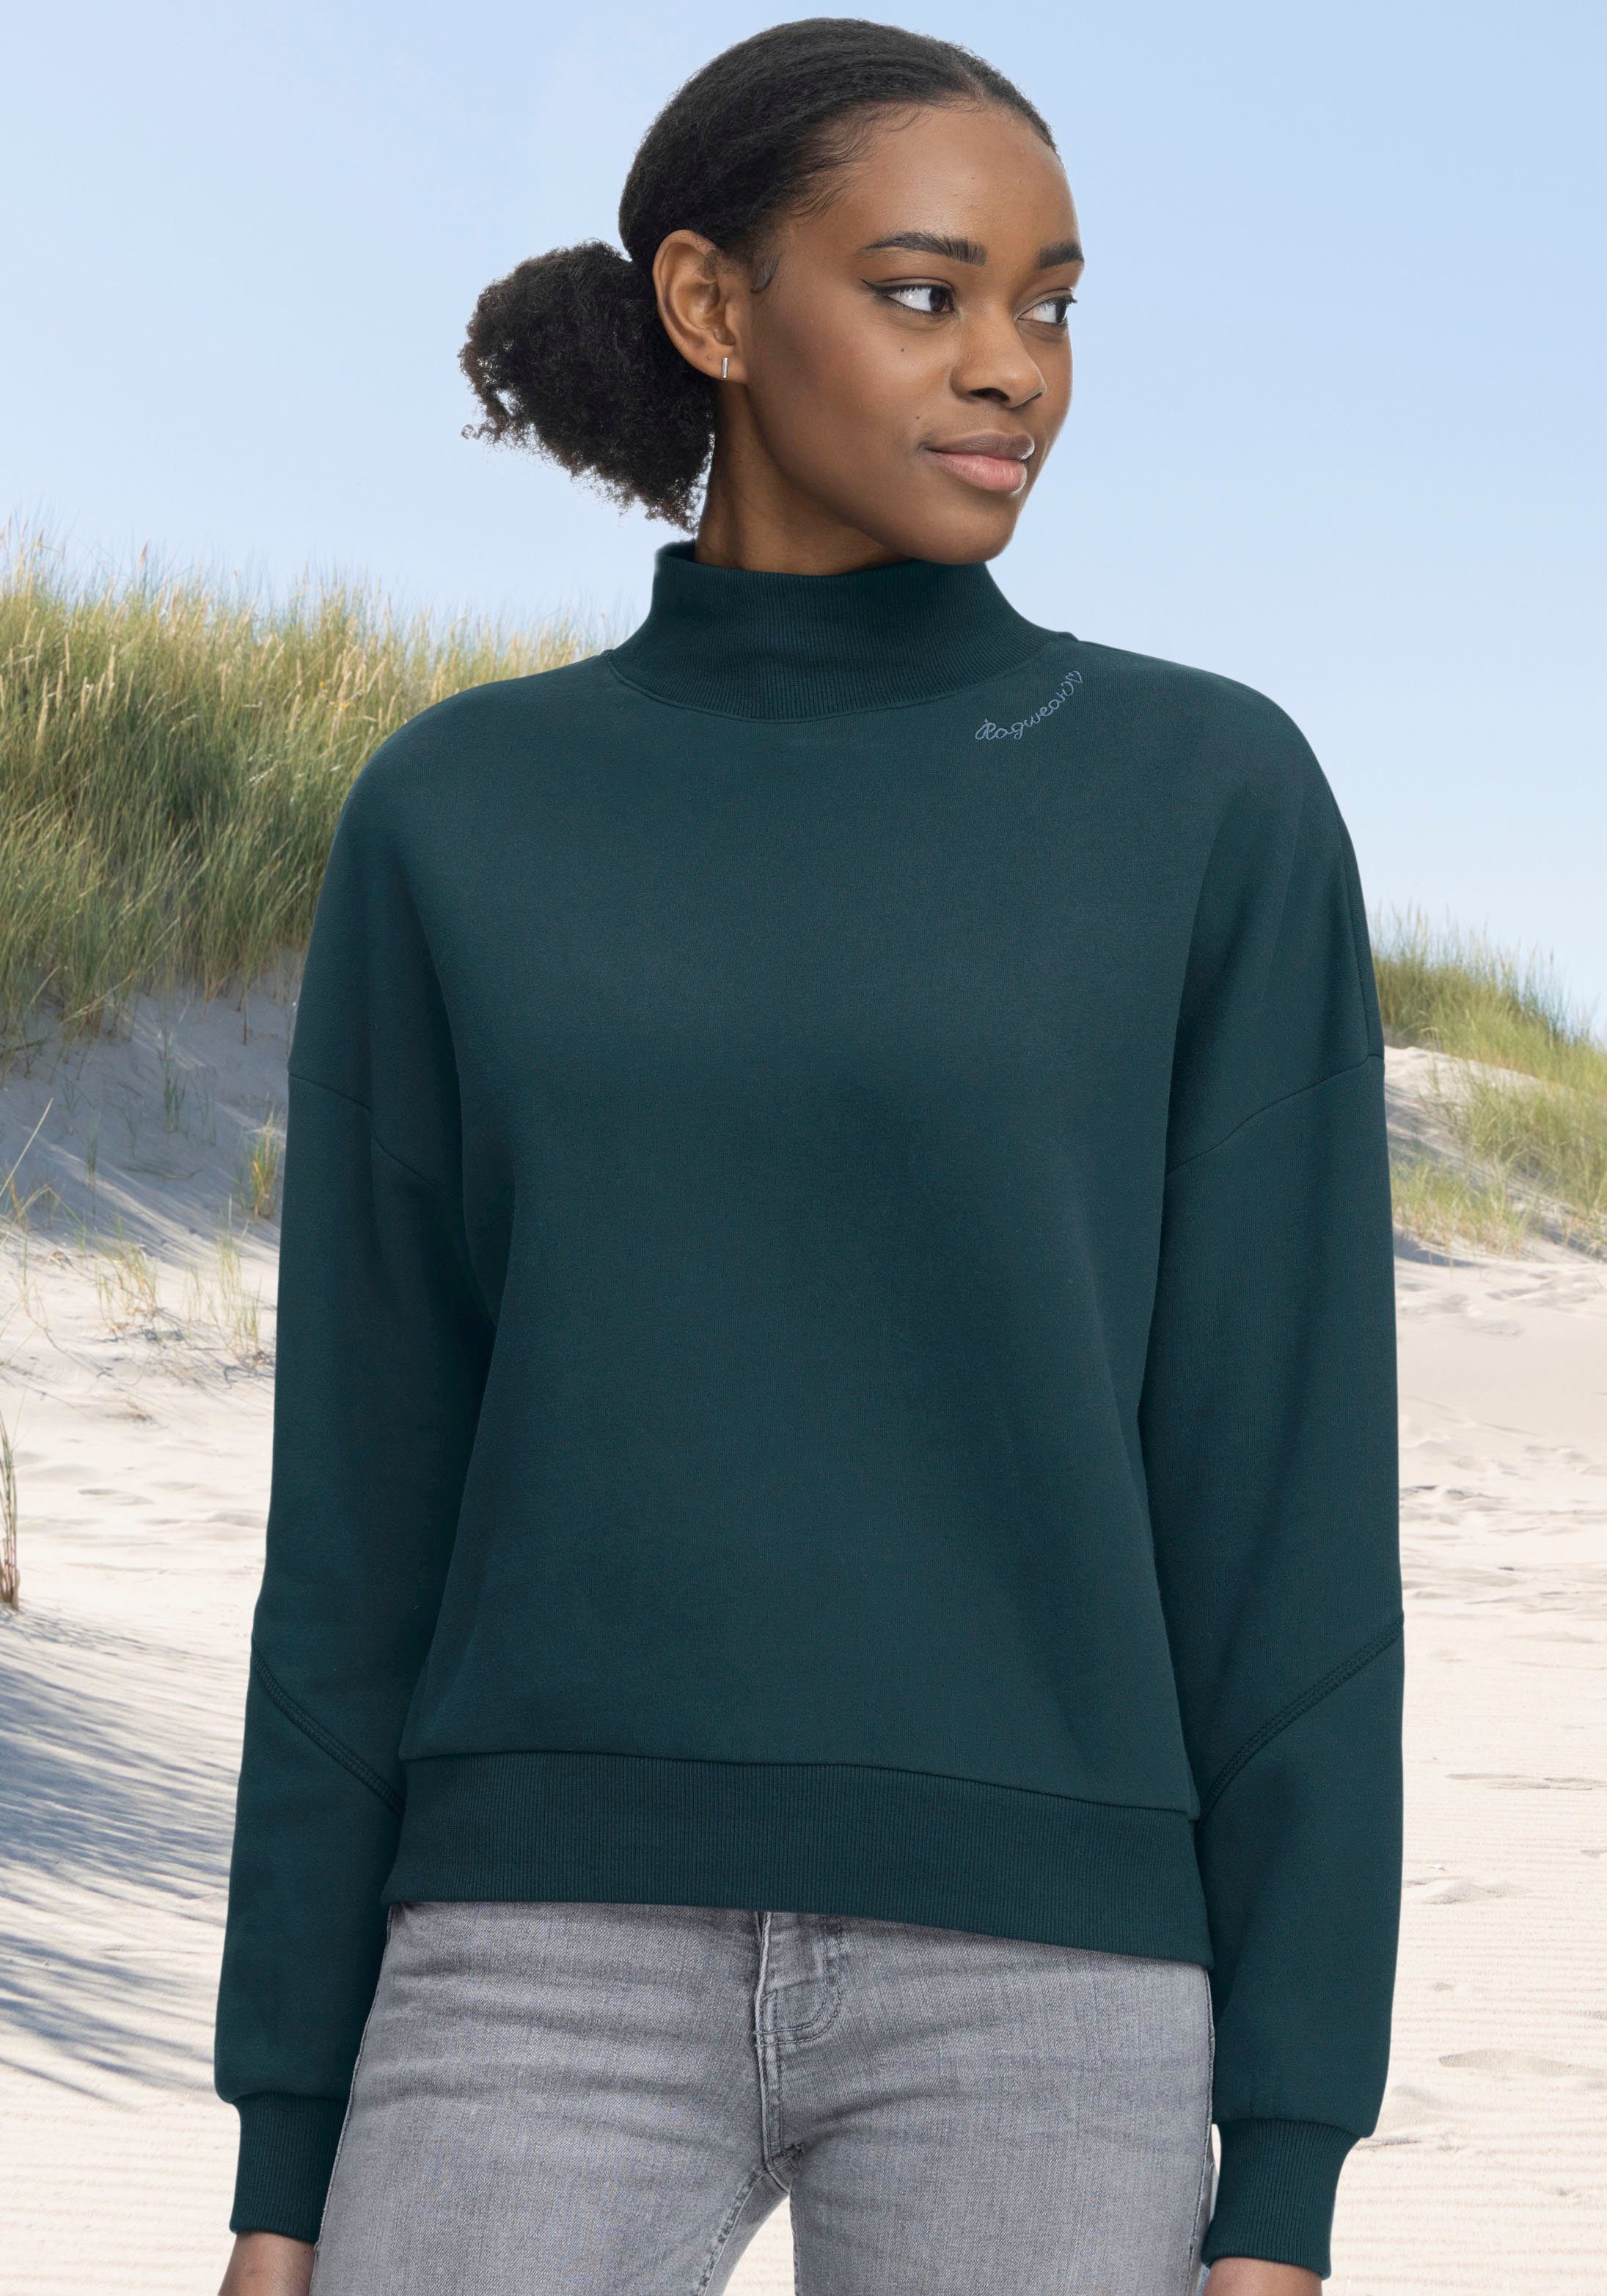 Sweater green KAILA dark 5021 SWEAT Ragwear